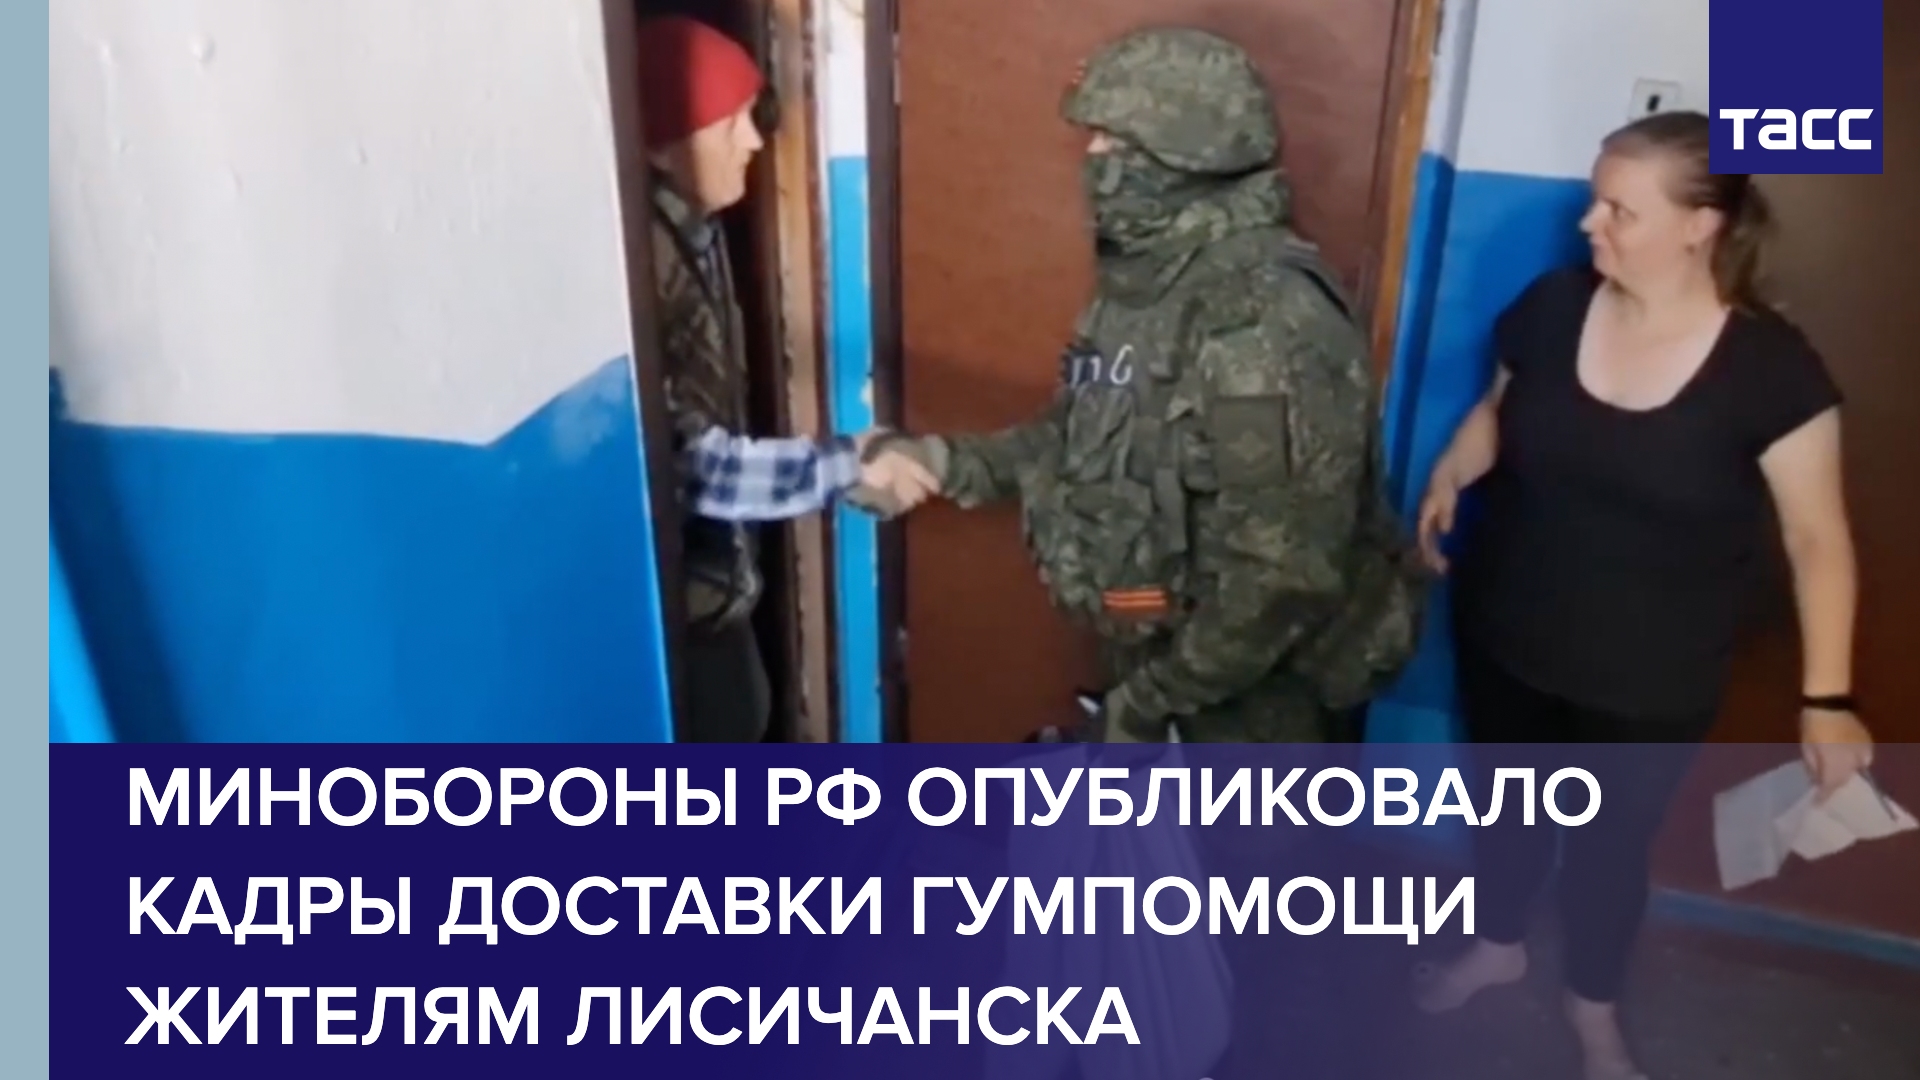 Минобороны РФ опубликовало кадры доставки гумпомощи жителям Лисичанска